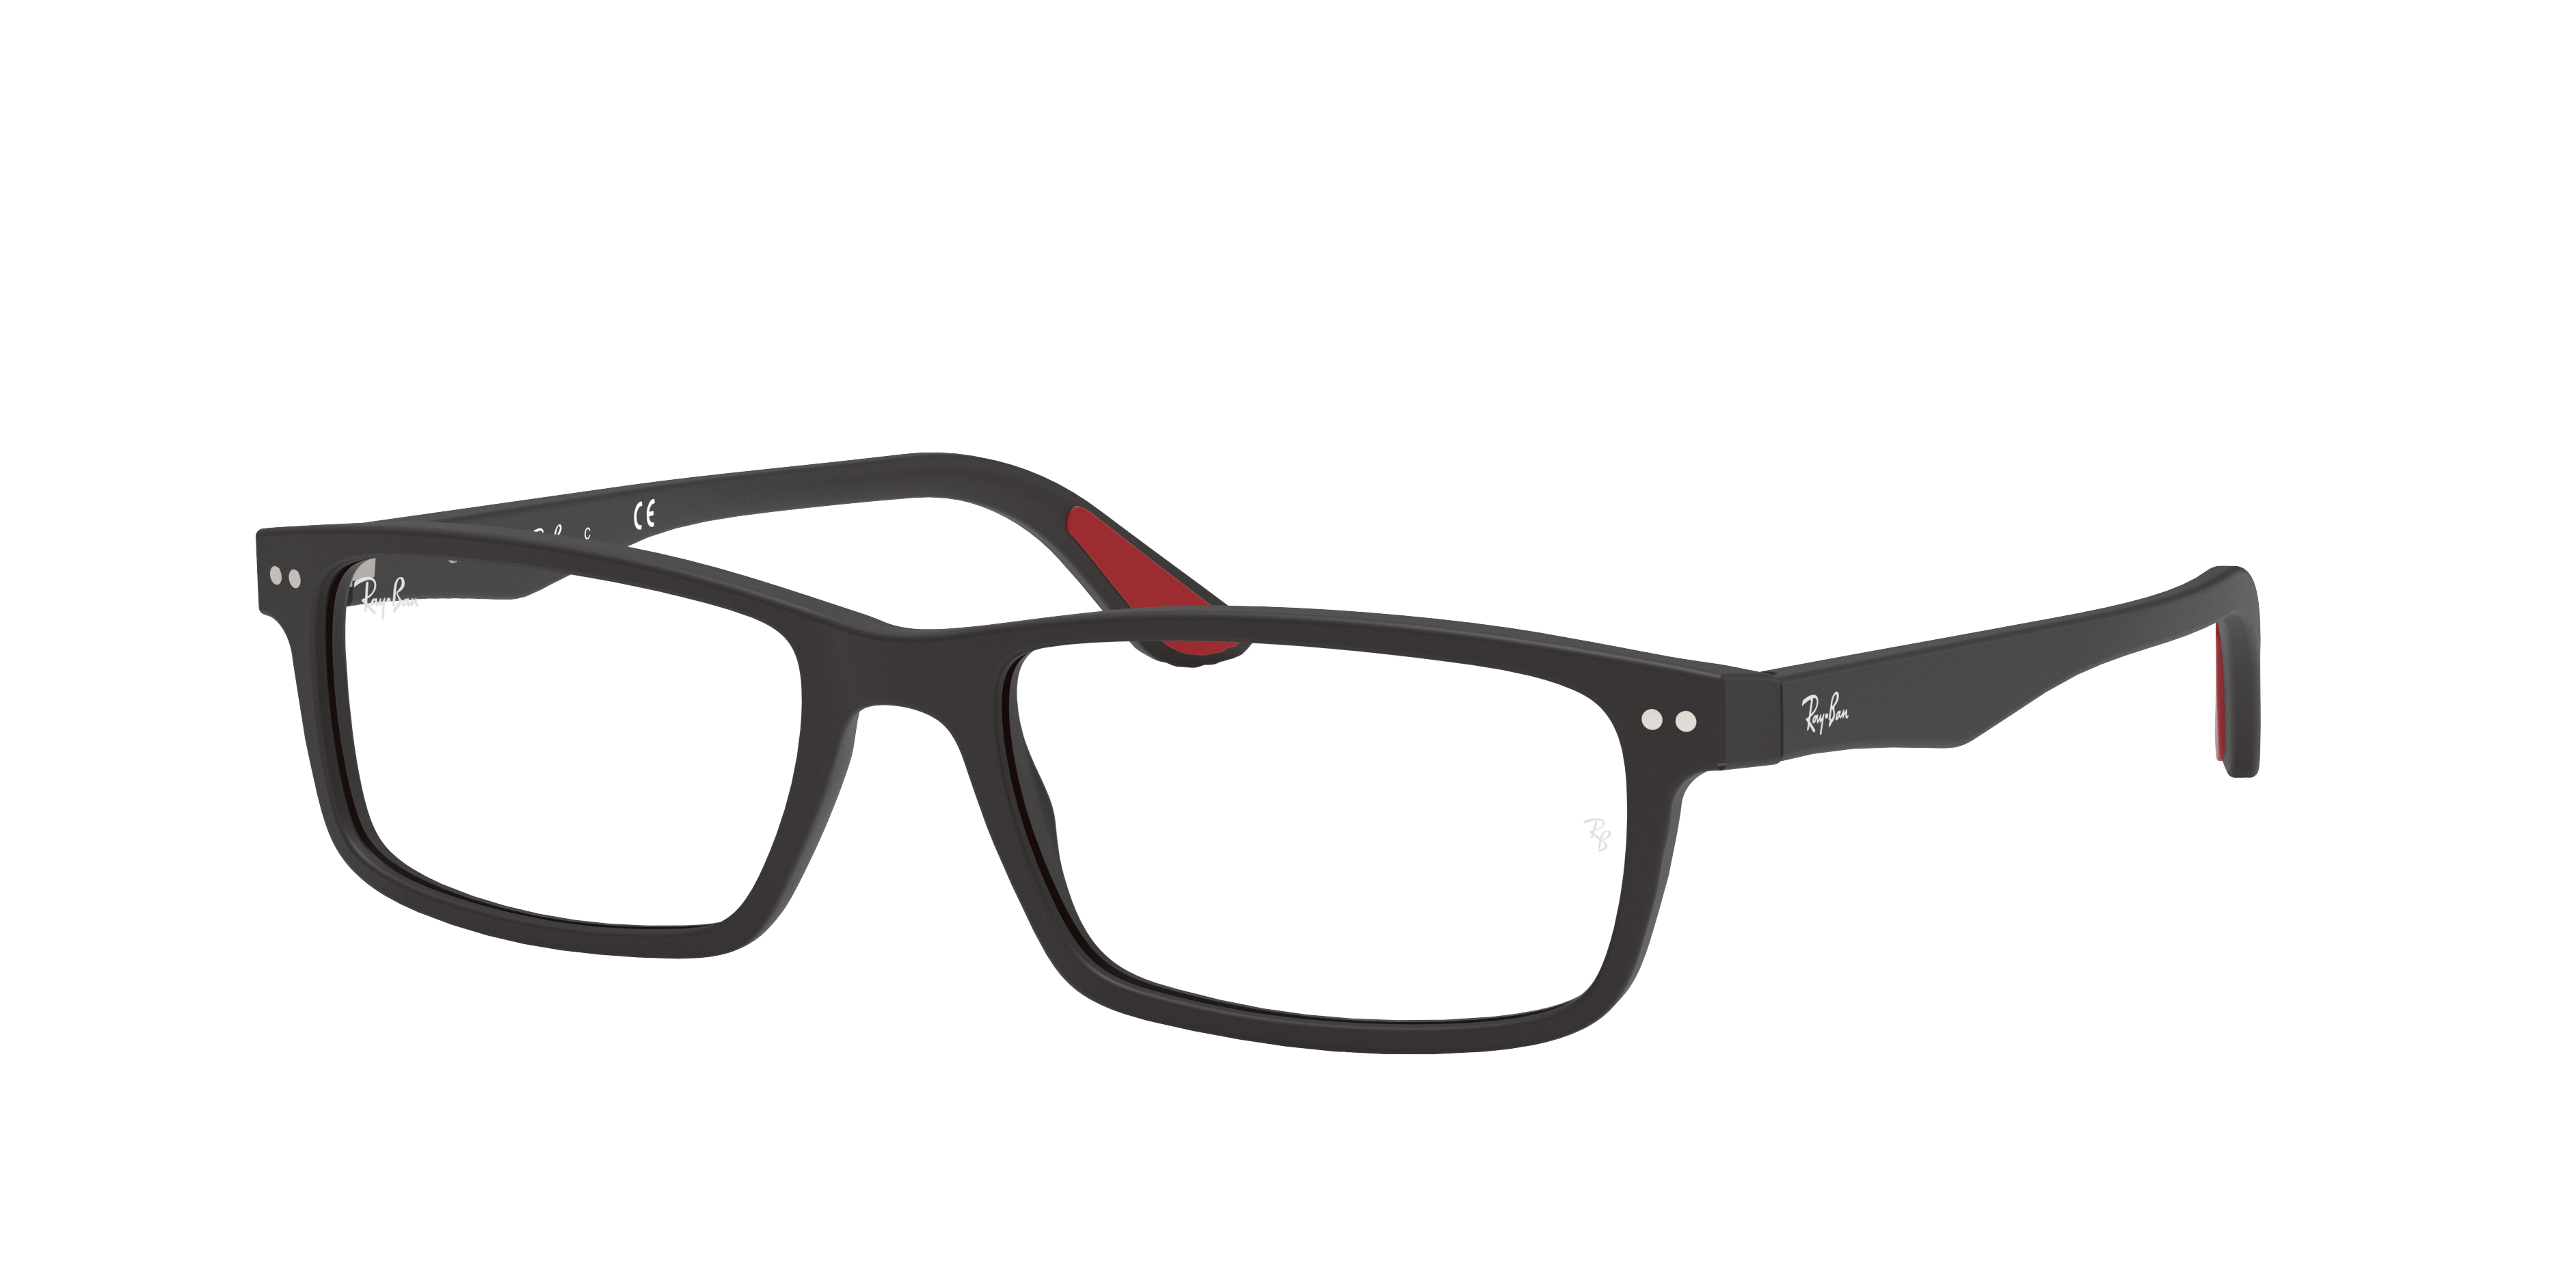 verteren Fotoelektrisch Moderniseren Rb5277 Eyeglasses with Black Frame | Ray-Ban®